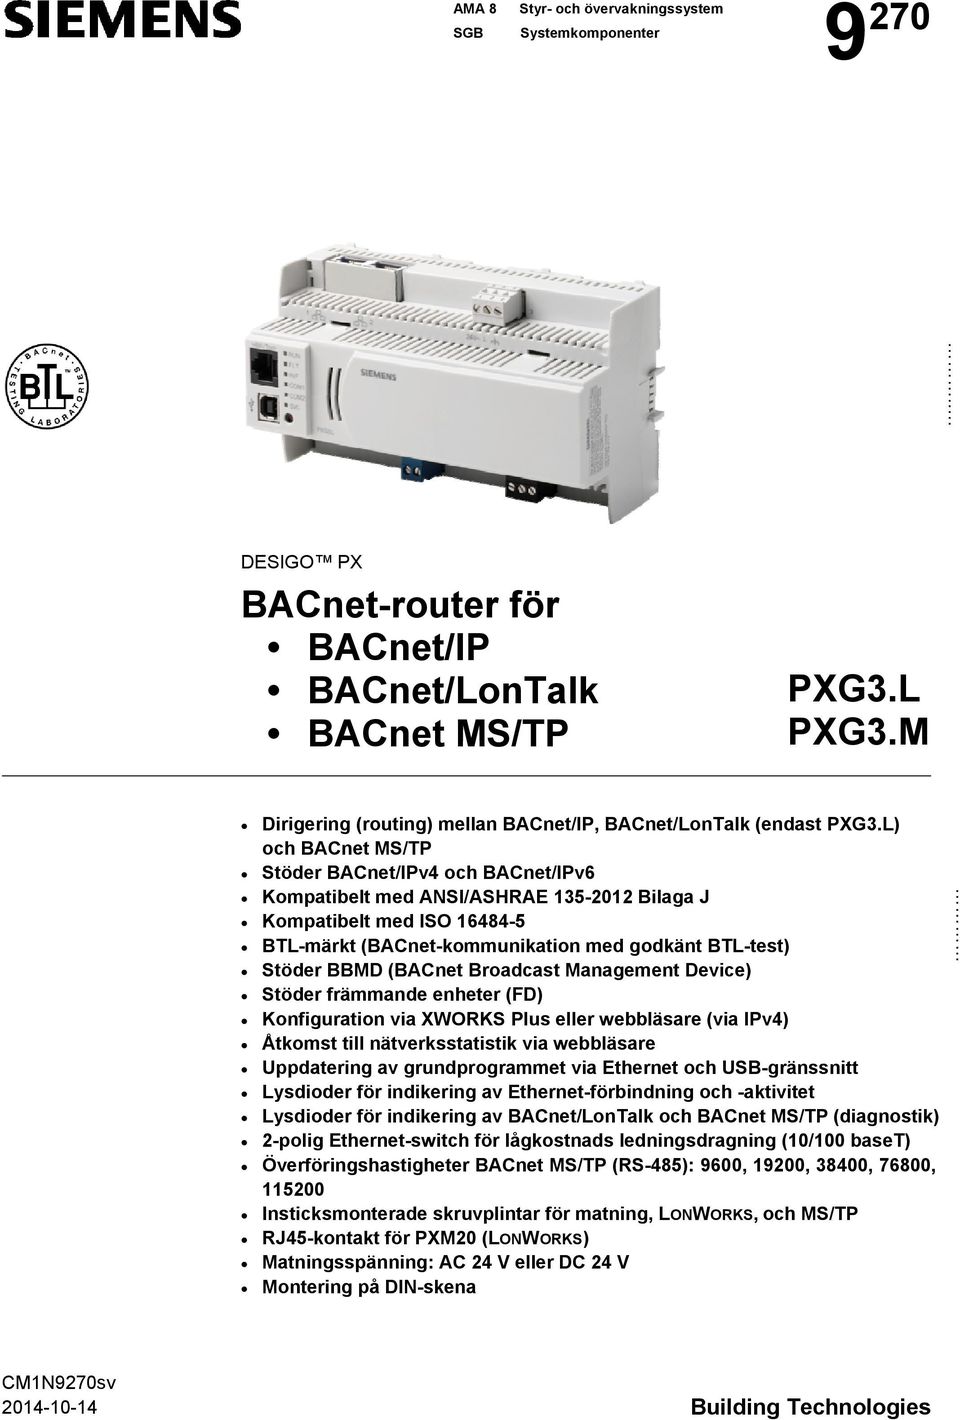 L) och BACnet MS/TP Stöder BACnet/IPv4 och BACnet/IPv6 Kompatibelt med ANSI/ASHRAE 135-2012 Bilaga J Kompatibelt med ISO 16484-5 BTL-märkt (BACnet-kommunikation med godkänt BTL-test) Stöder BBMD